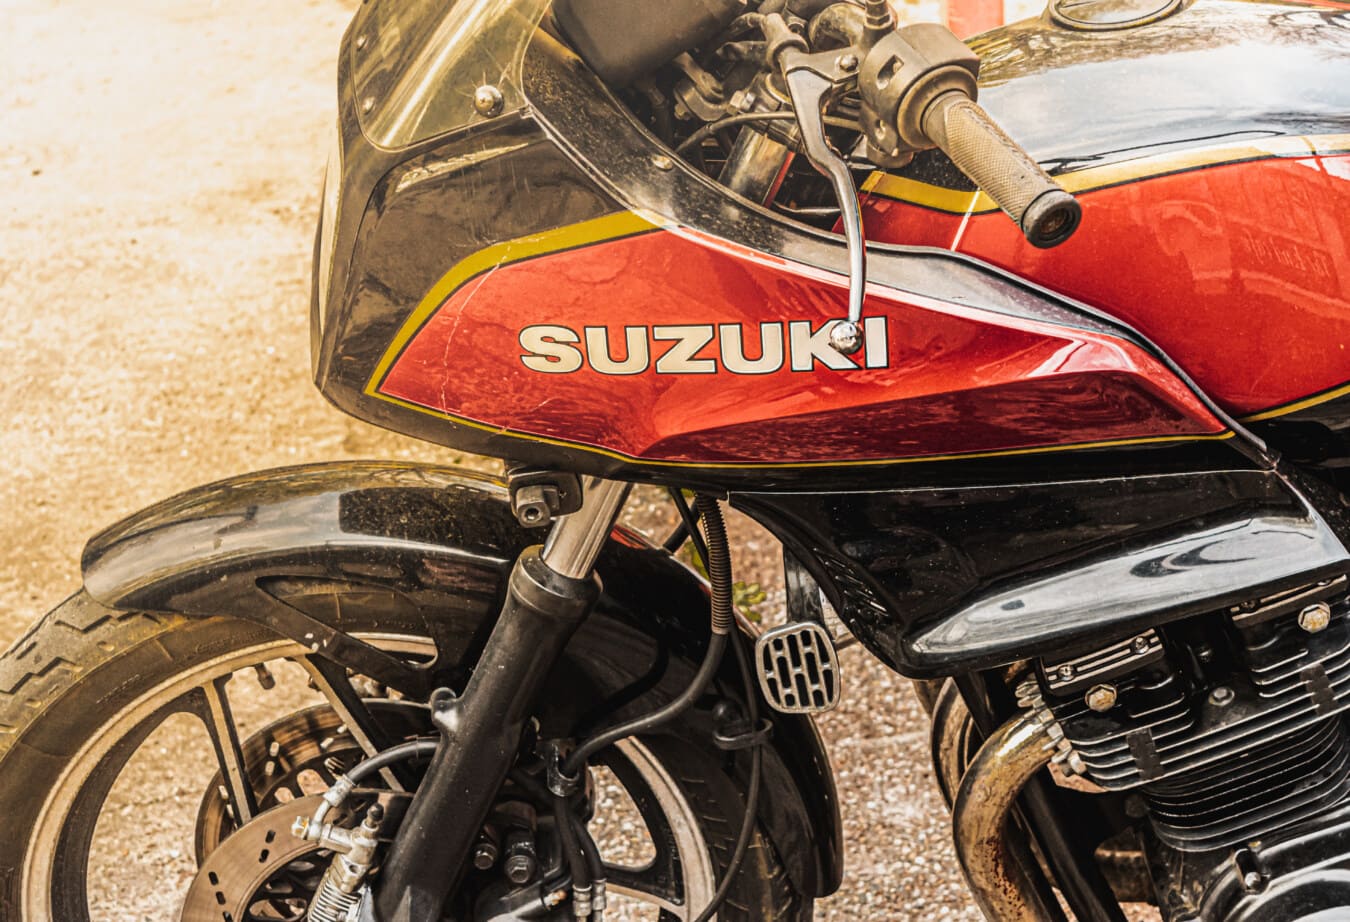 Suzuki, logam, merah tua, Sepeda Motor, Sepeda Motor, roda kemudi, mesin, kendaraan, klasik, retro